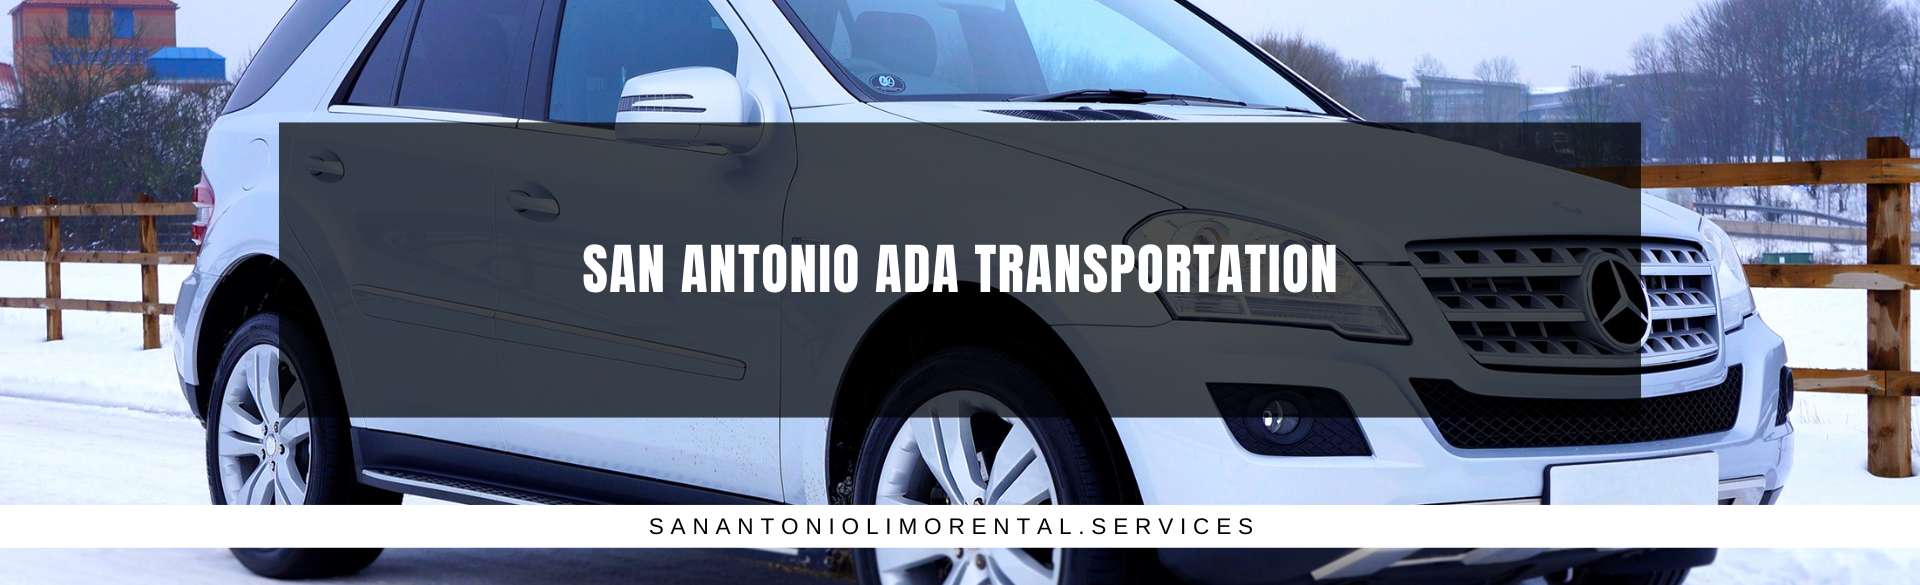 San Antonio ADA Transportation